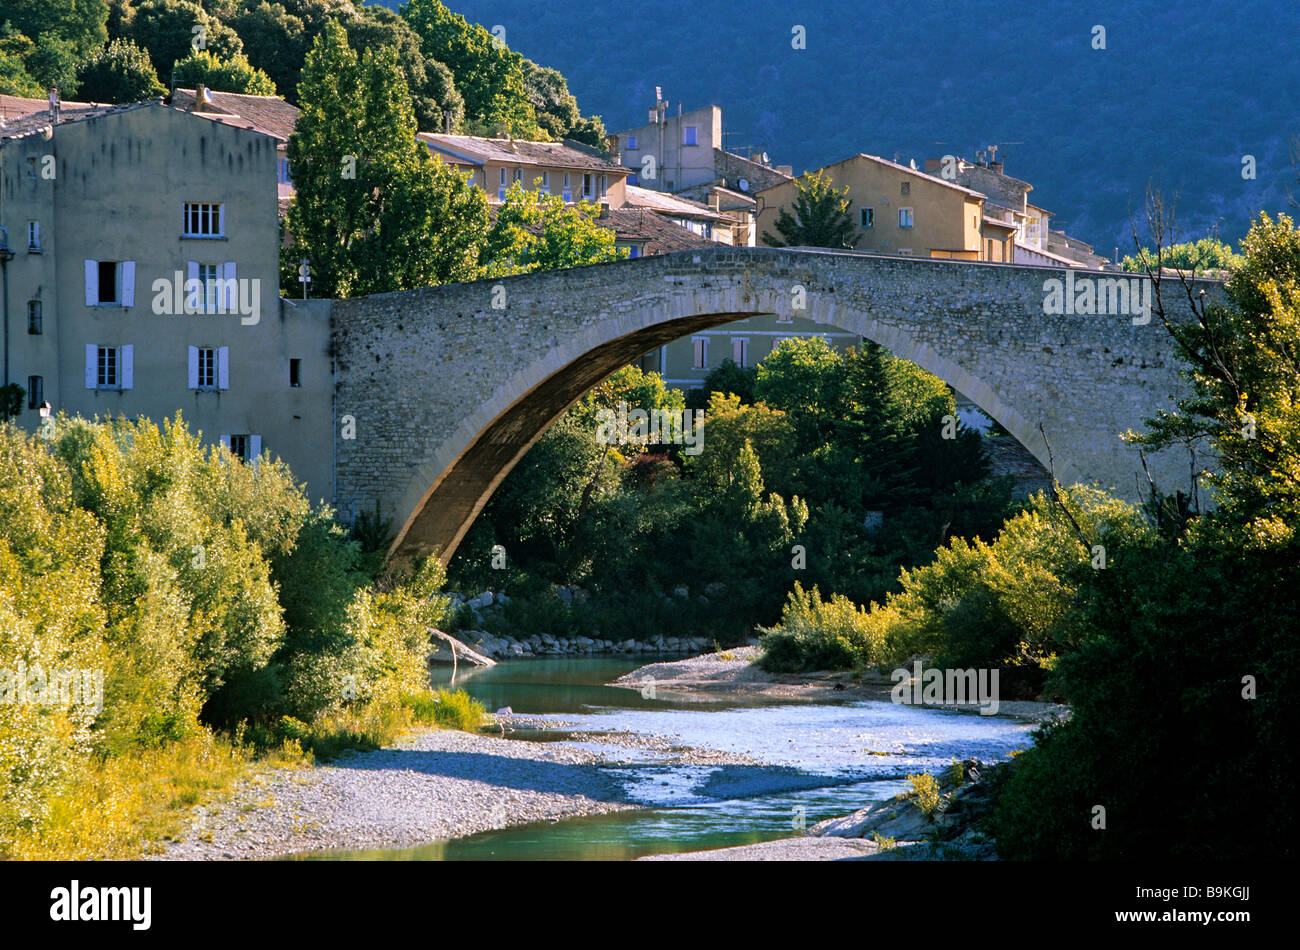 France, Drôme, Drôme Provençale, Nyons, Pont roman sur la rivière Eygues Banque D'Images